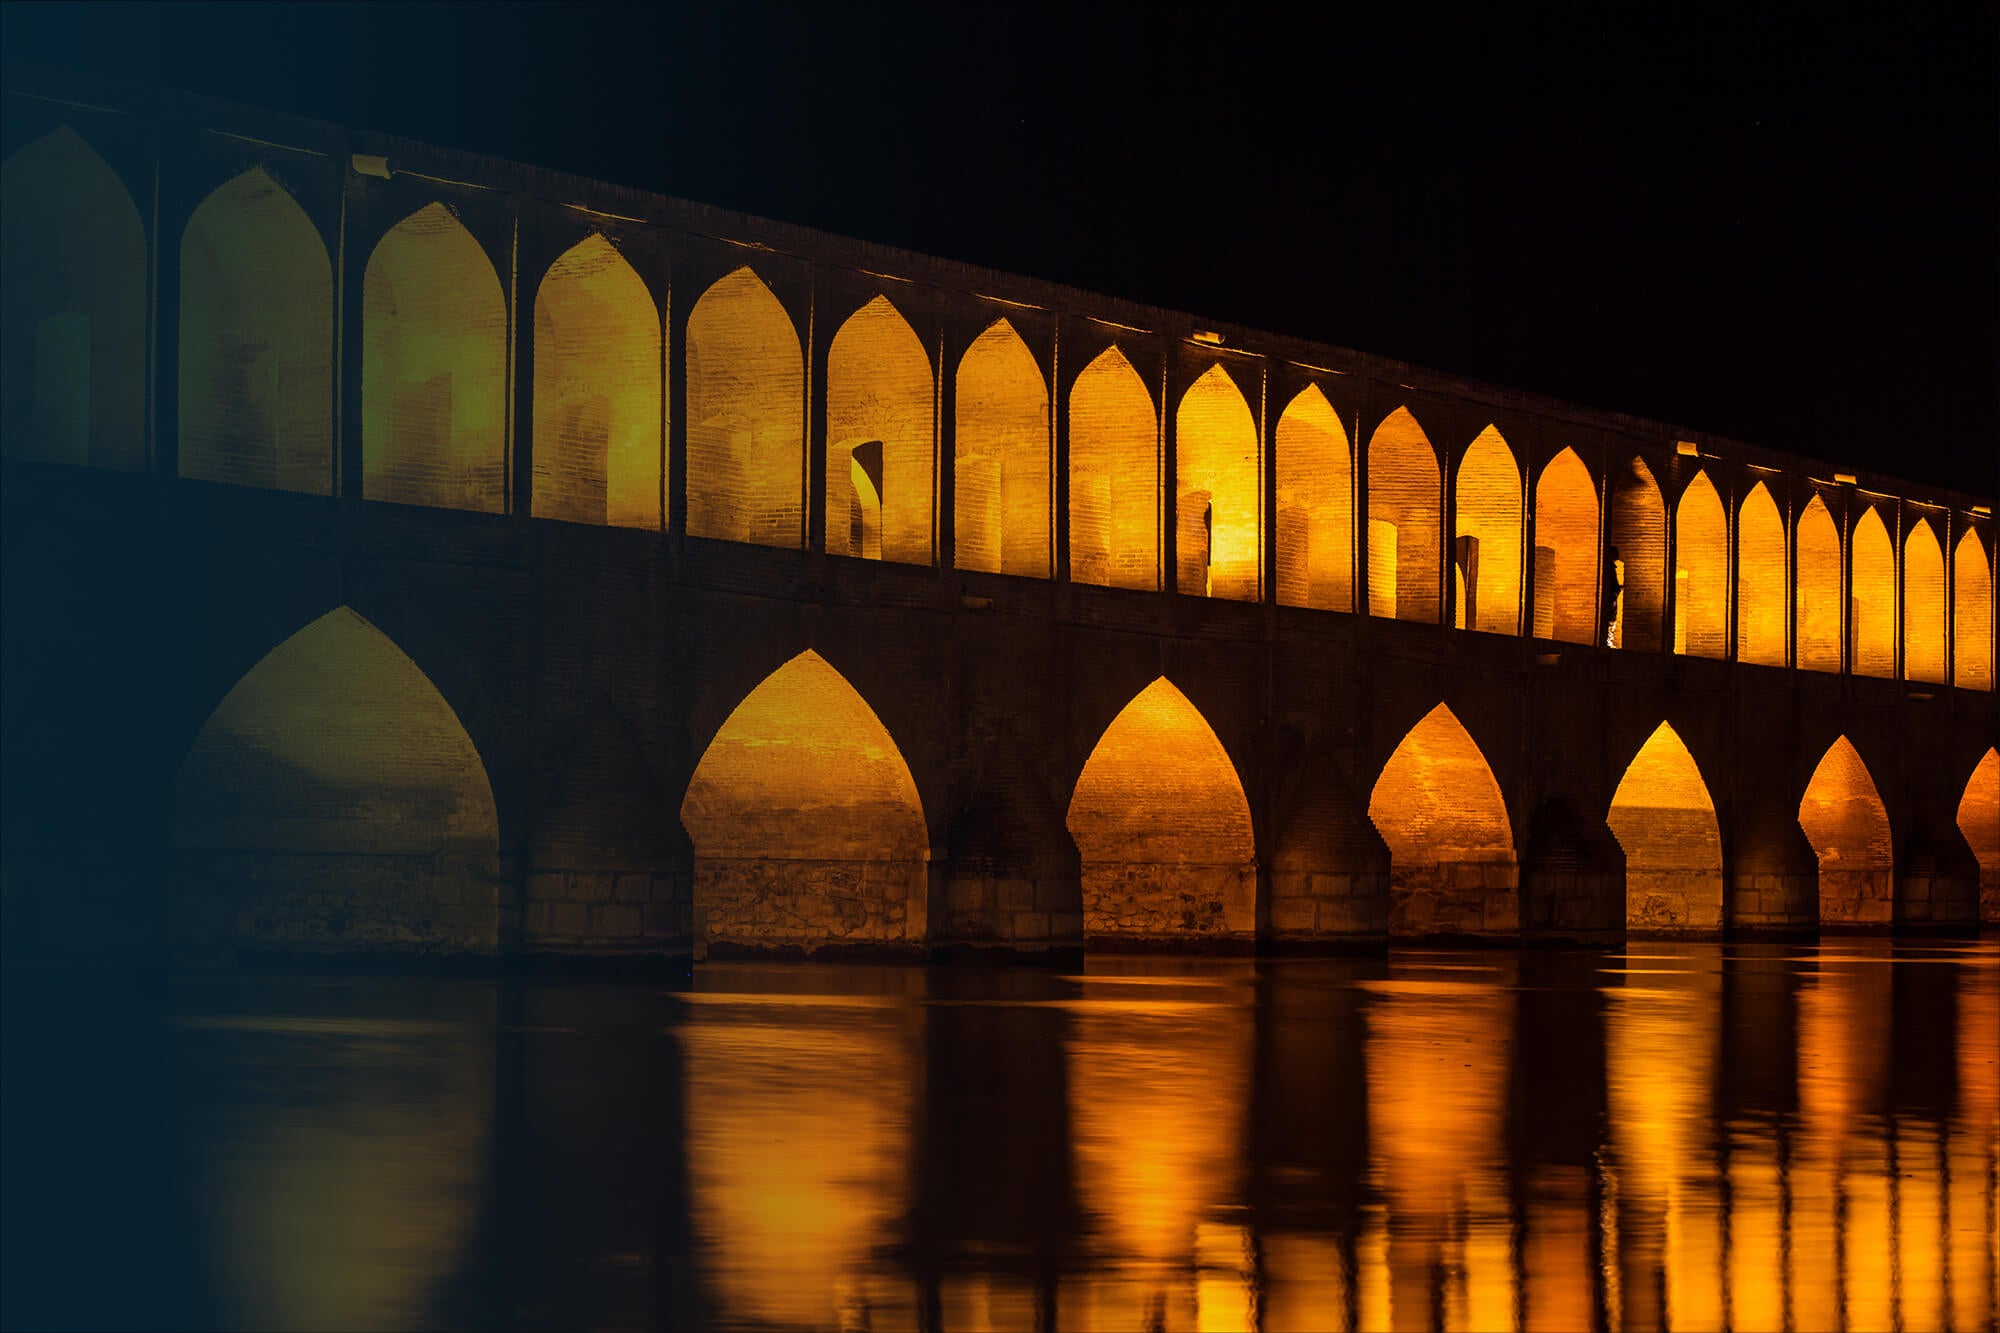 Ein Bild von der 33-Säulenbrücke in Isfahan bei Nacht. Die Brücke ist angeleuchtet.